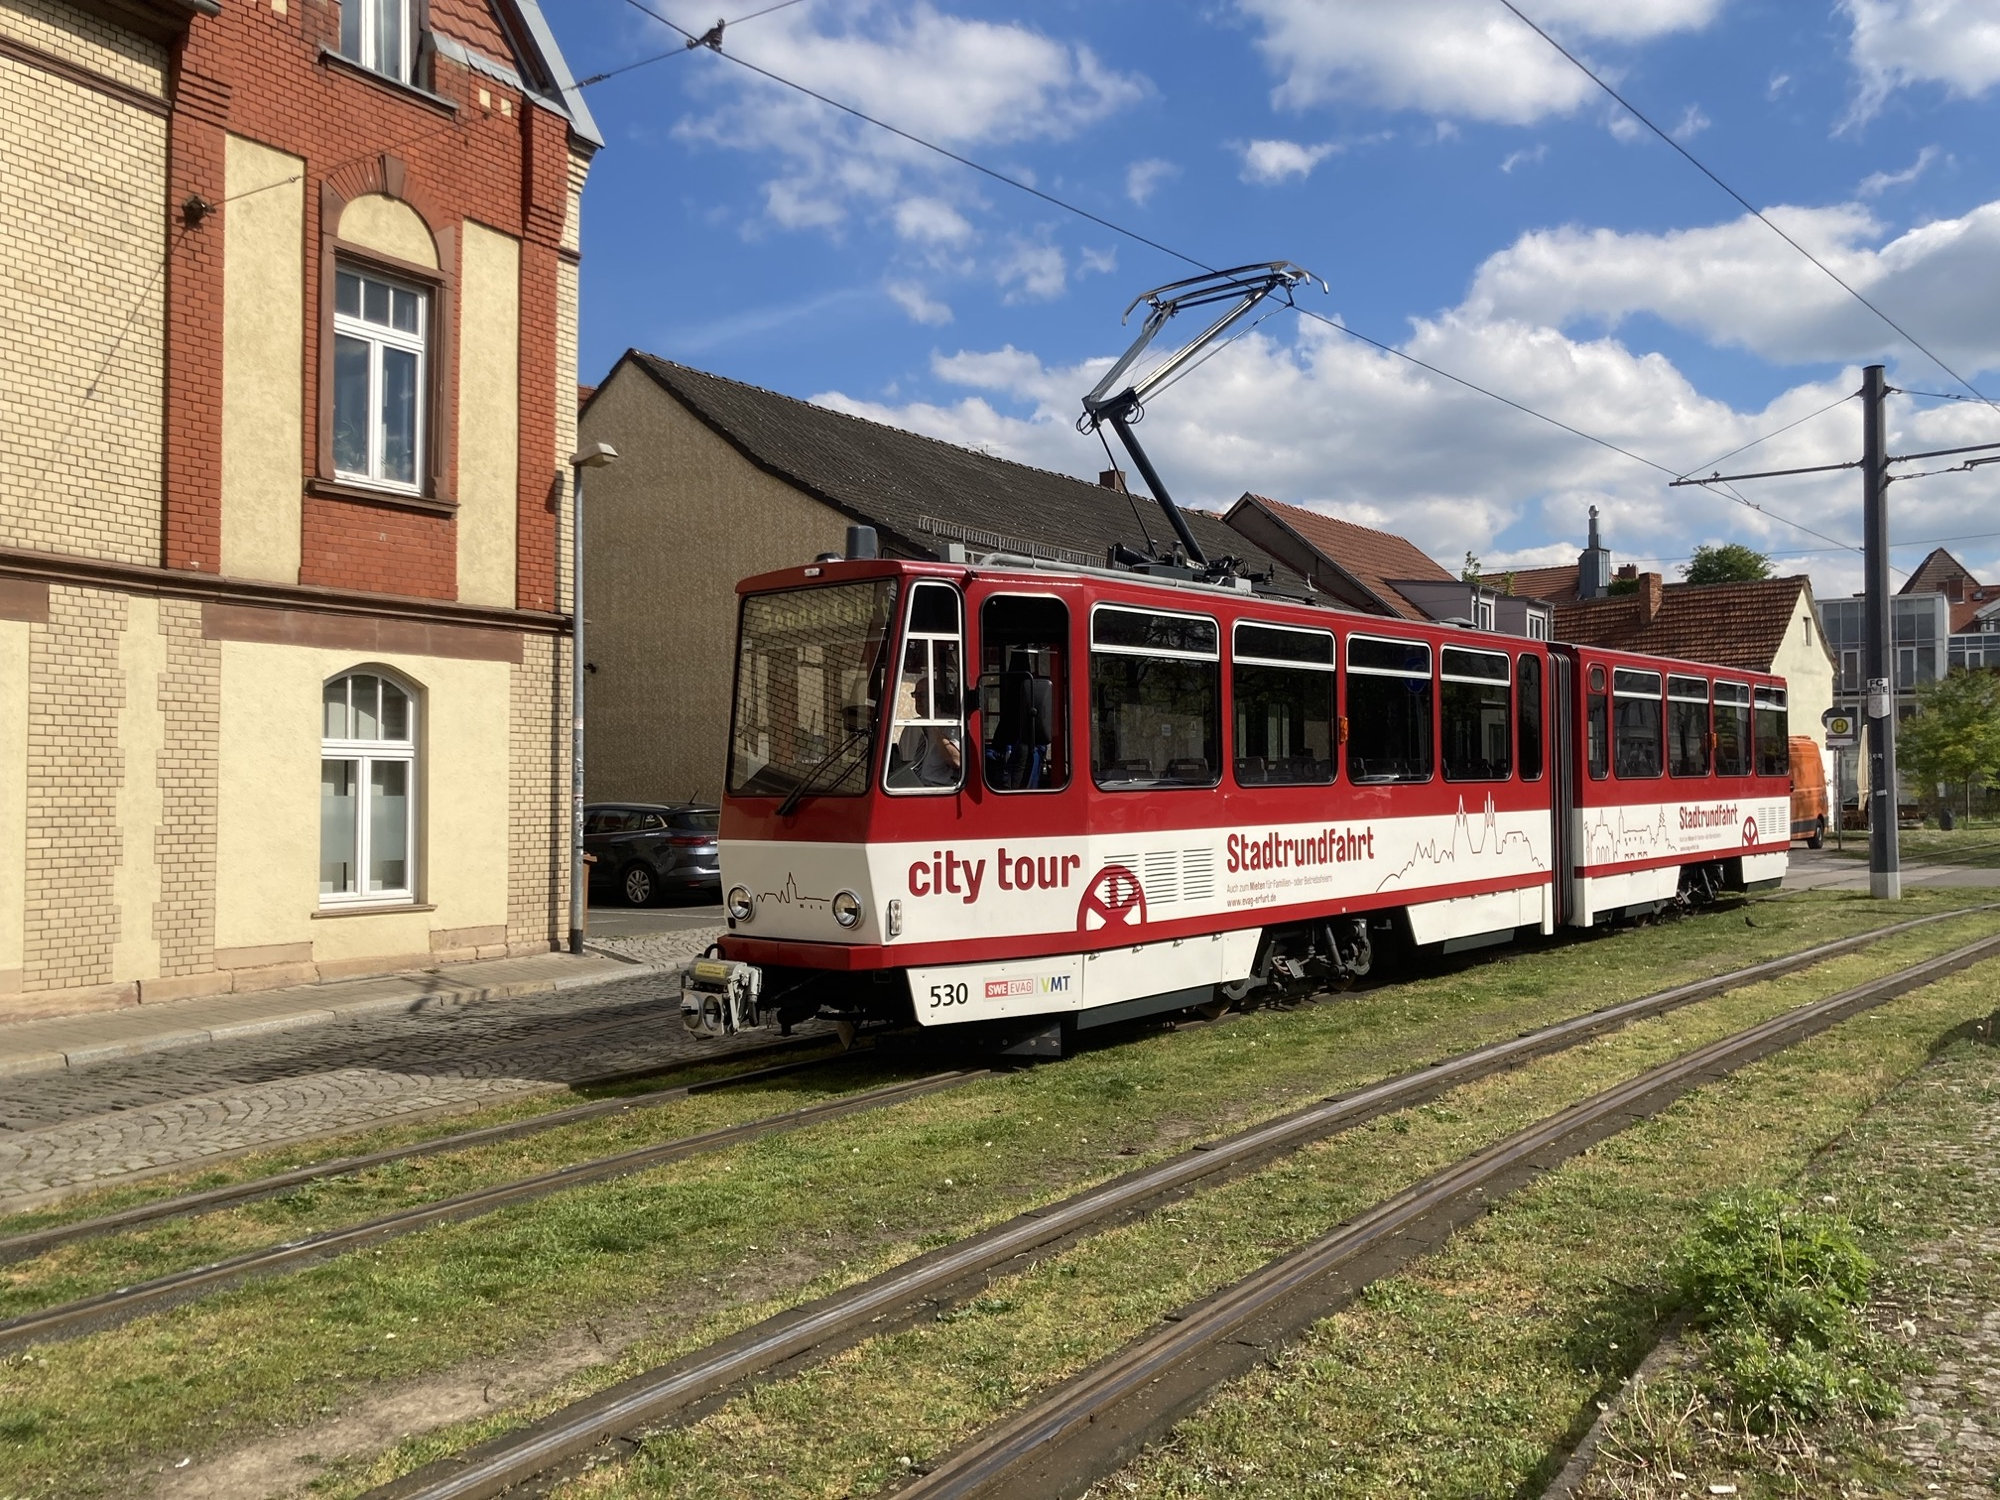 altmodische Straßenbahn mit der Aufschrift „city tour Stadtrundfahrt“, sie steht auf Rasengleis und wird gleich zu einer Sonderfahrt abfahren